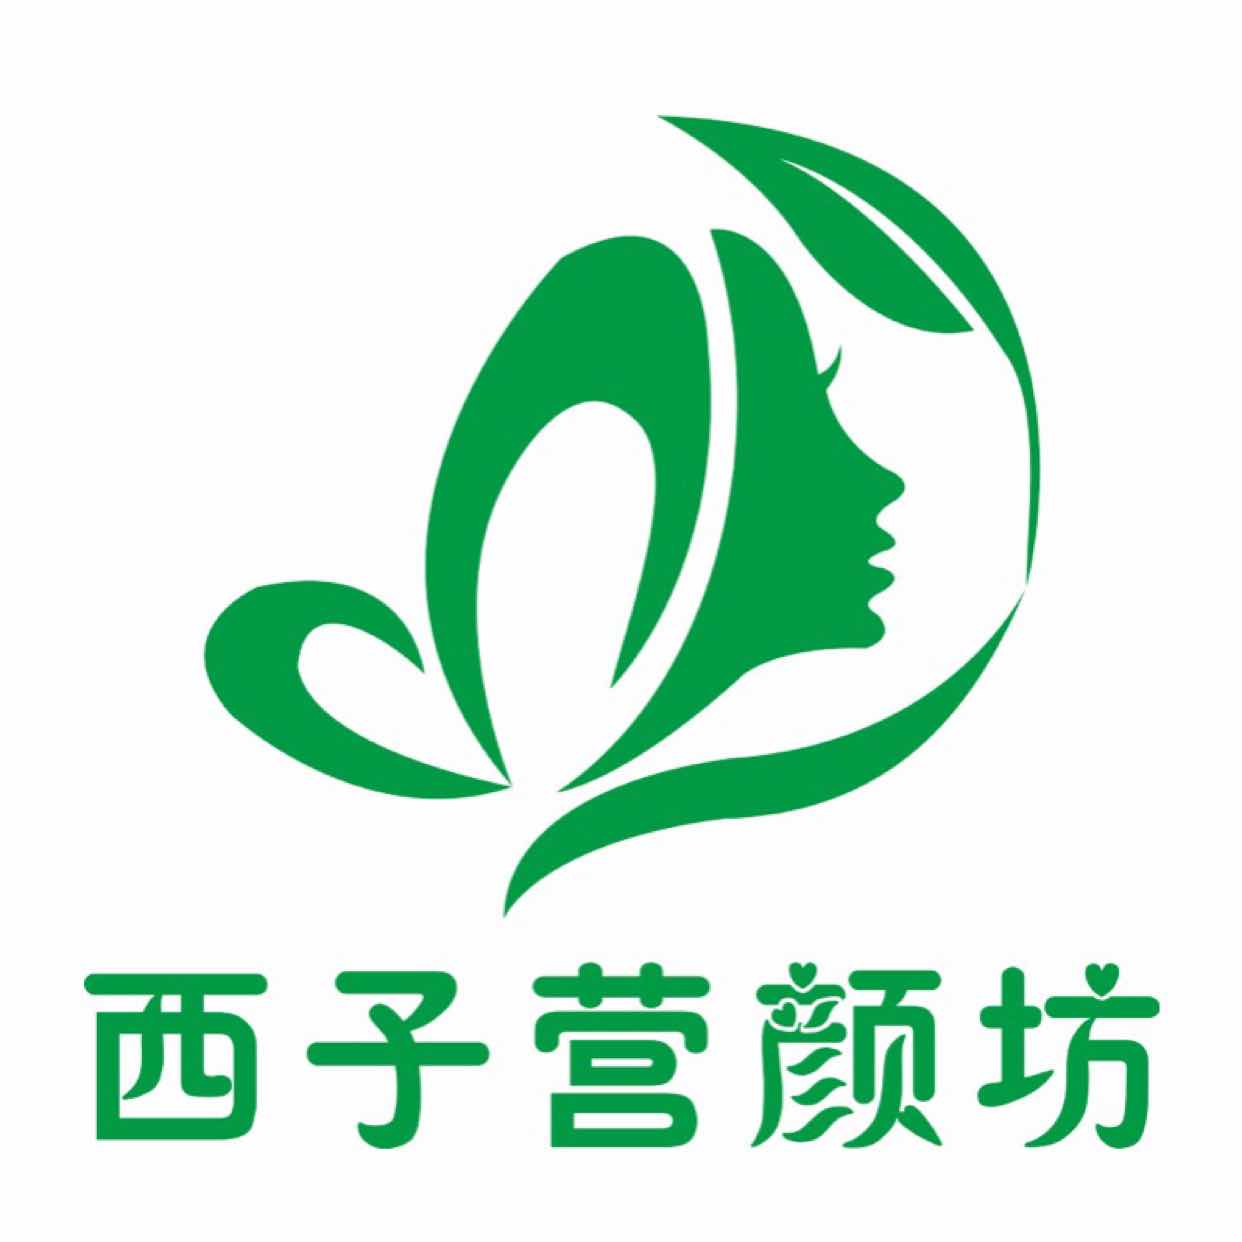 西子_logo